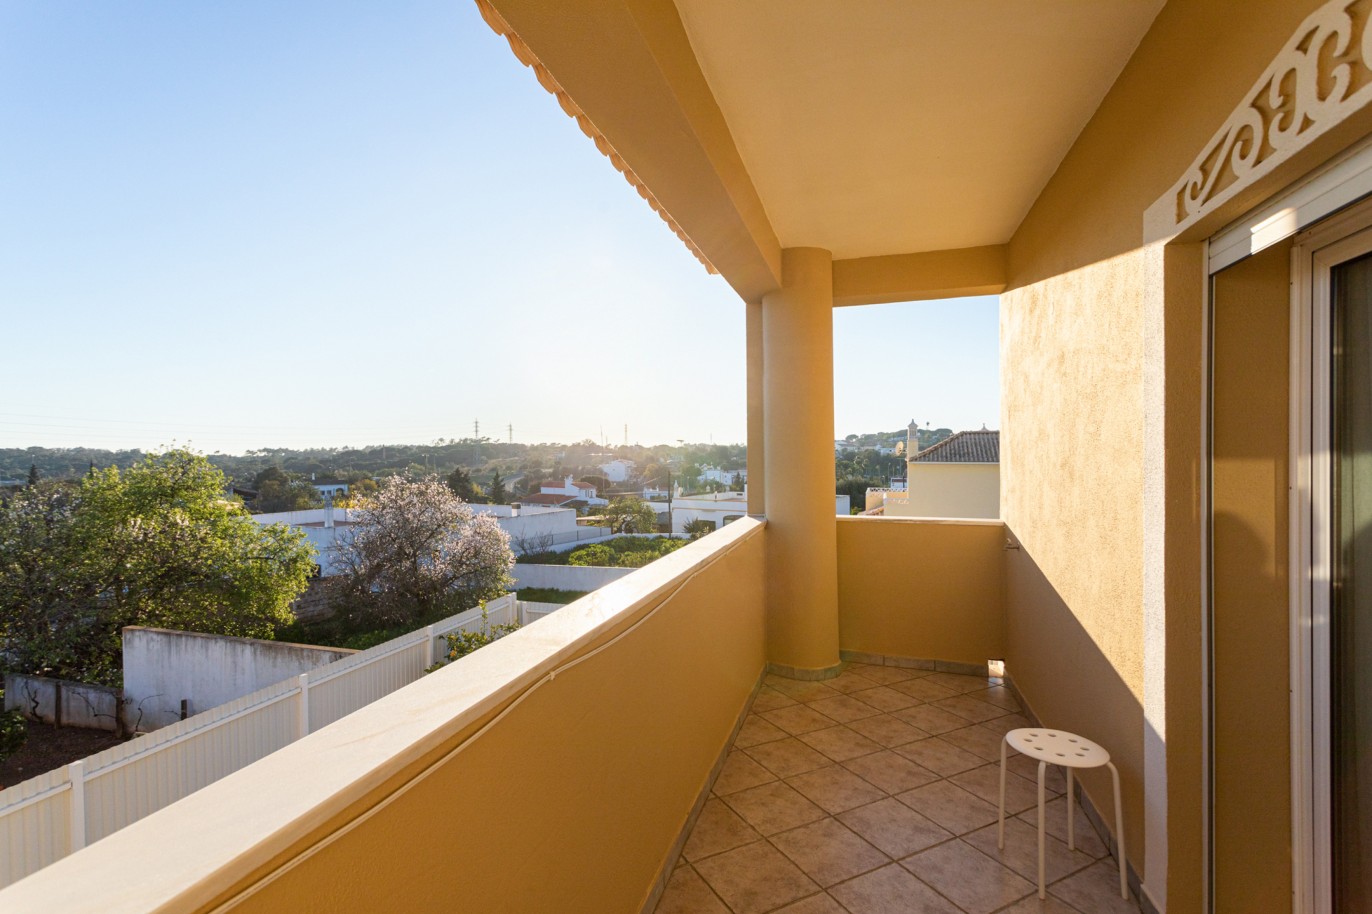 Villa de 4 dormitorios en zona de prestigio, en venta en Almancil, Algarve_217669